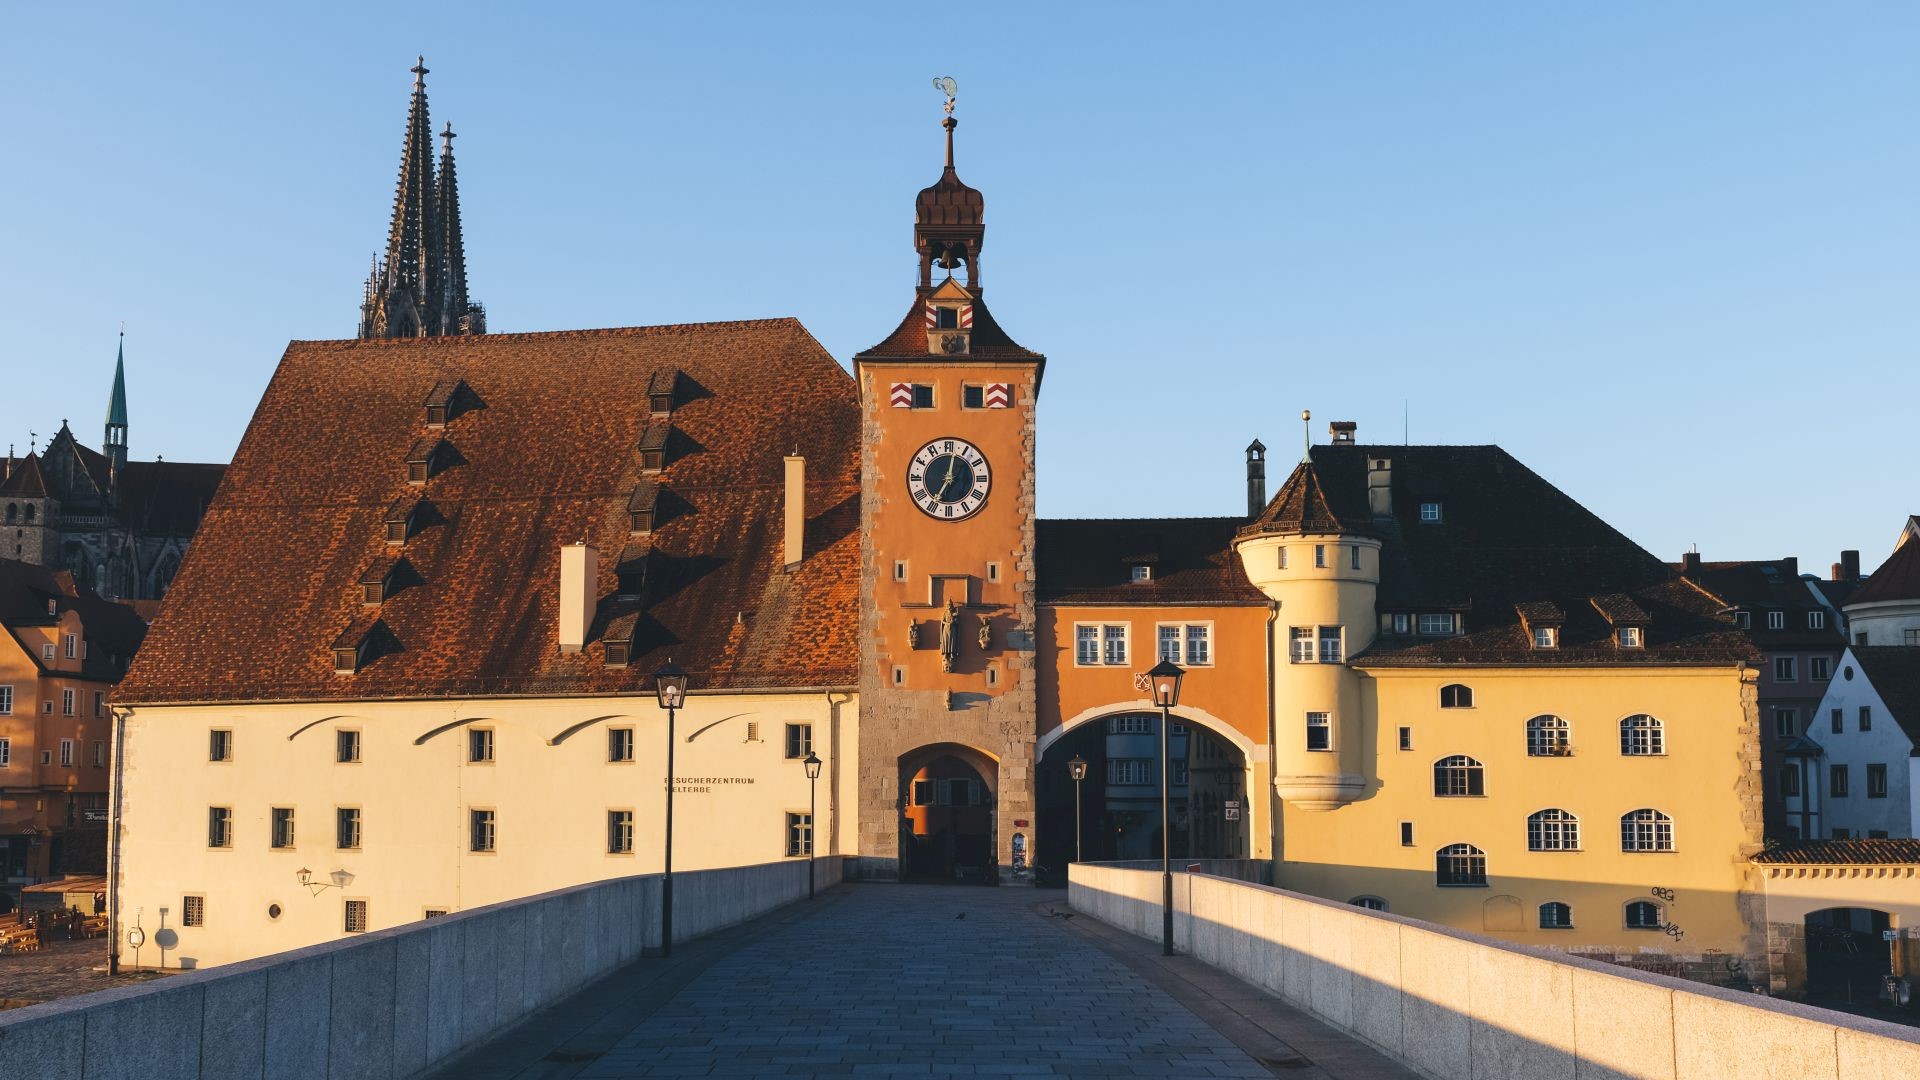 UNESCO-Welterbestadt Regensburg mit Steinerner Brücke